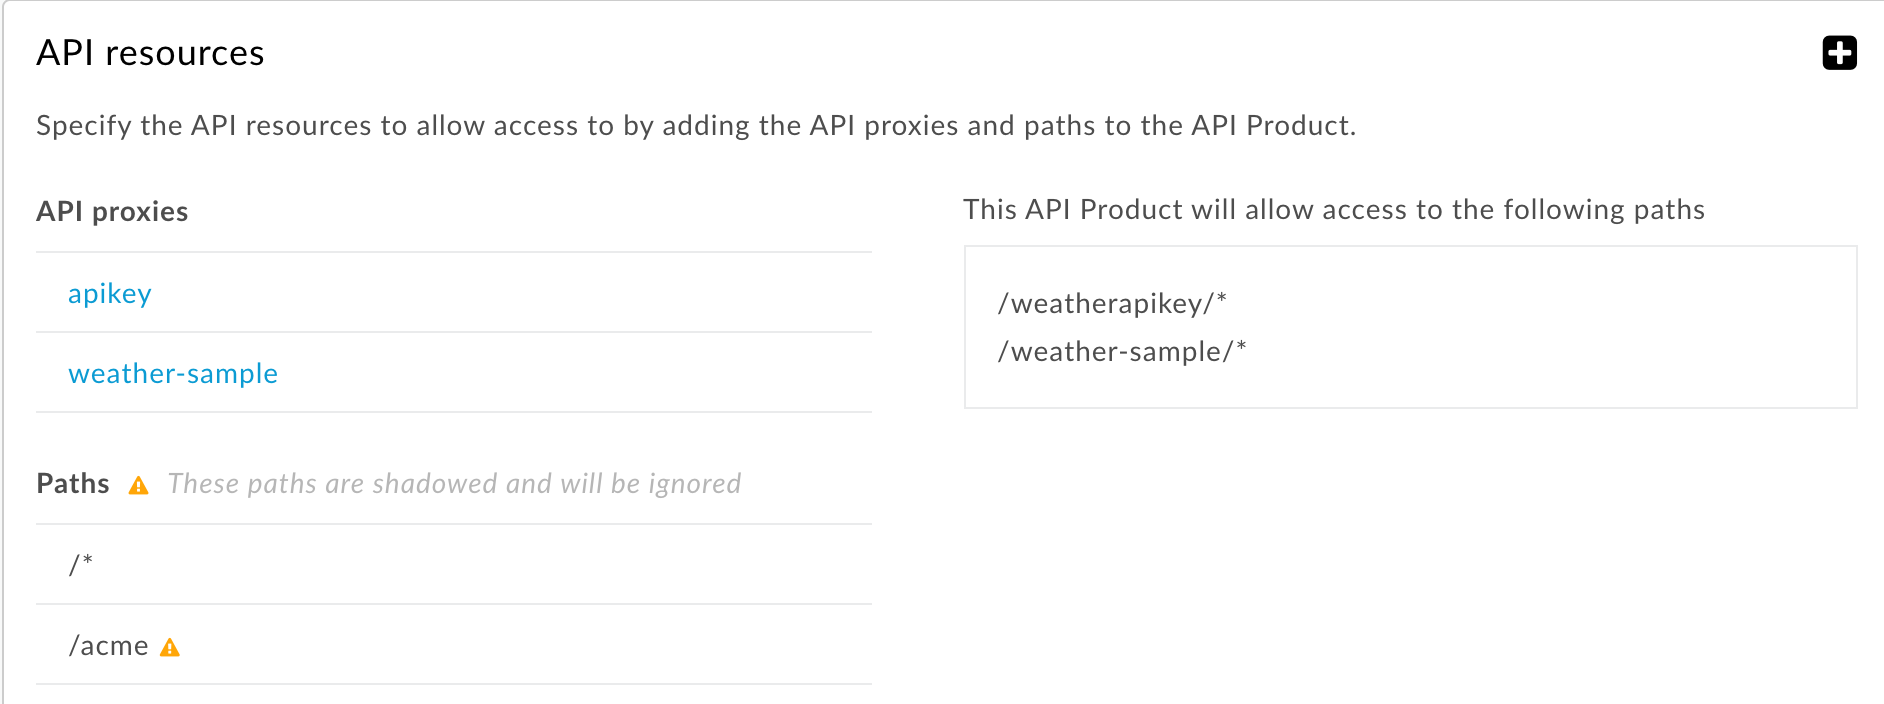 すべての API プロキシに適用されるリソースパスとより具体的なリソースパスは無視されます。